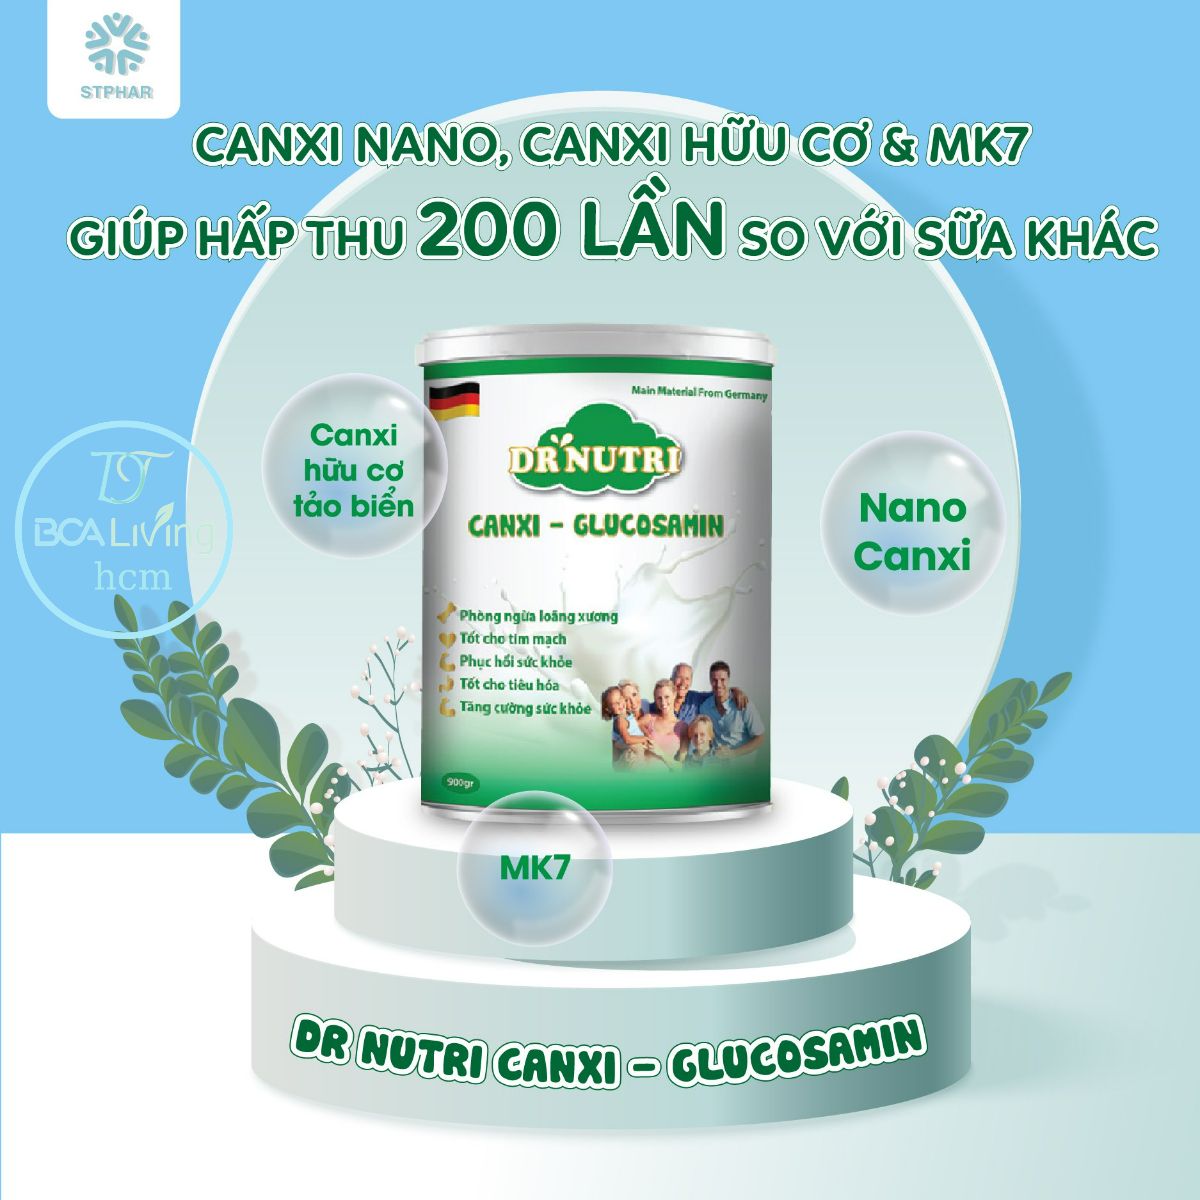 [Freeship 300k+quà 19k] Sữa bột cho cơ xương khớp Dr Nutri Canxi Glucosamin,Organic,bcalivinghcm,dành cho người già loãng xương thiếu canxi,...